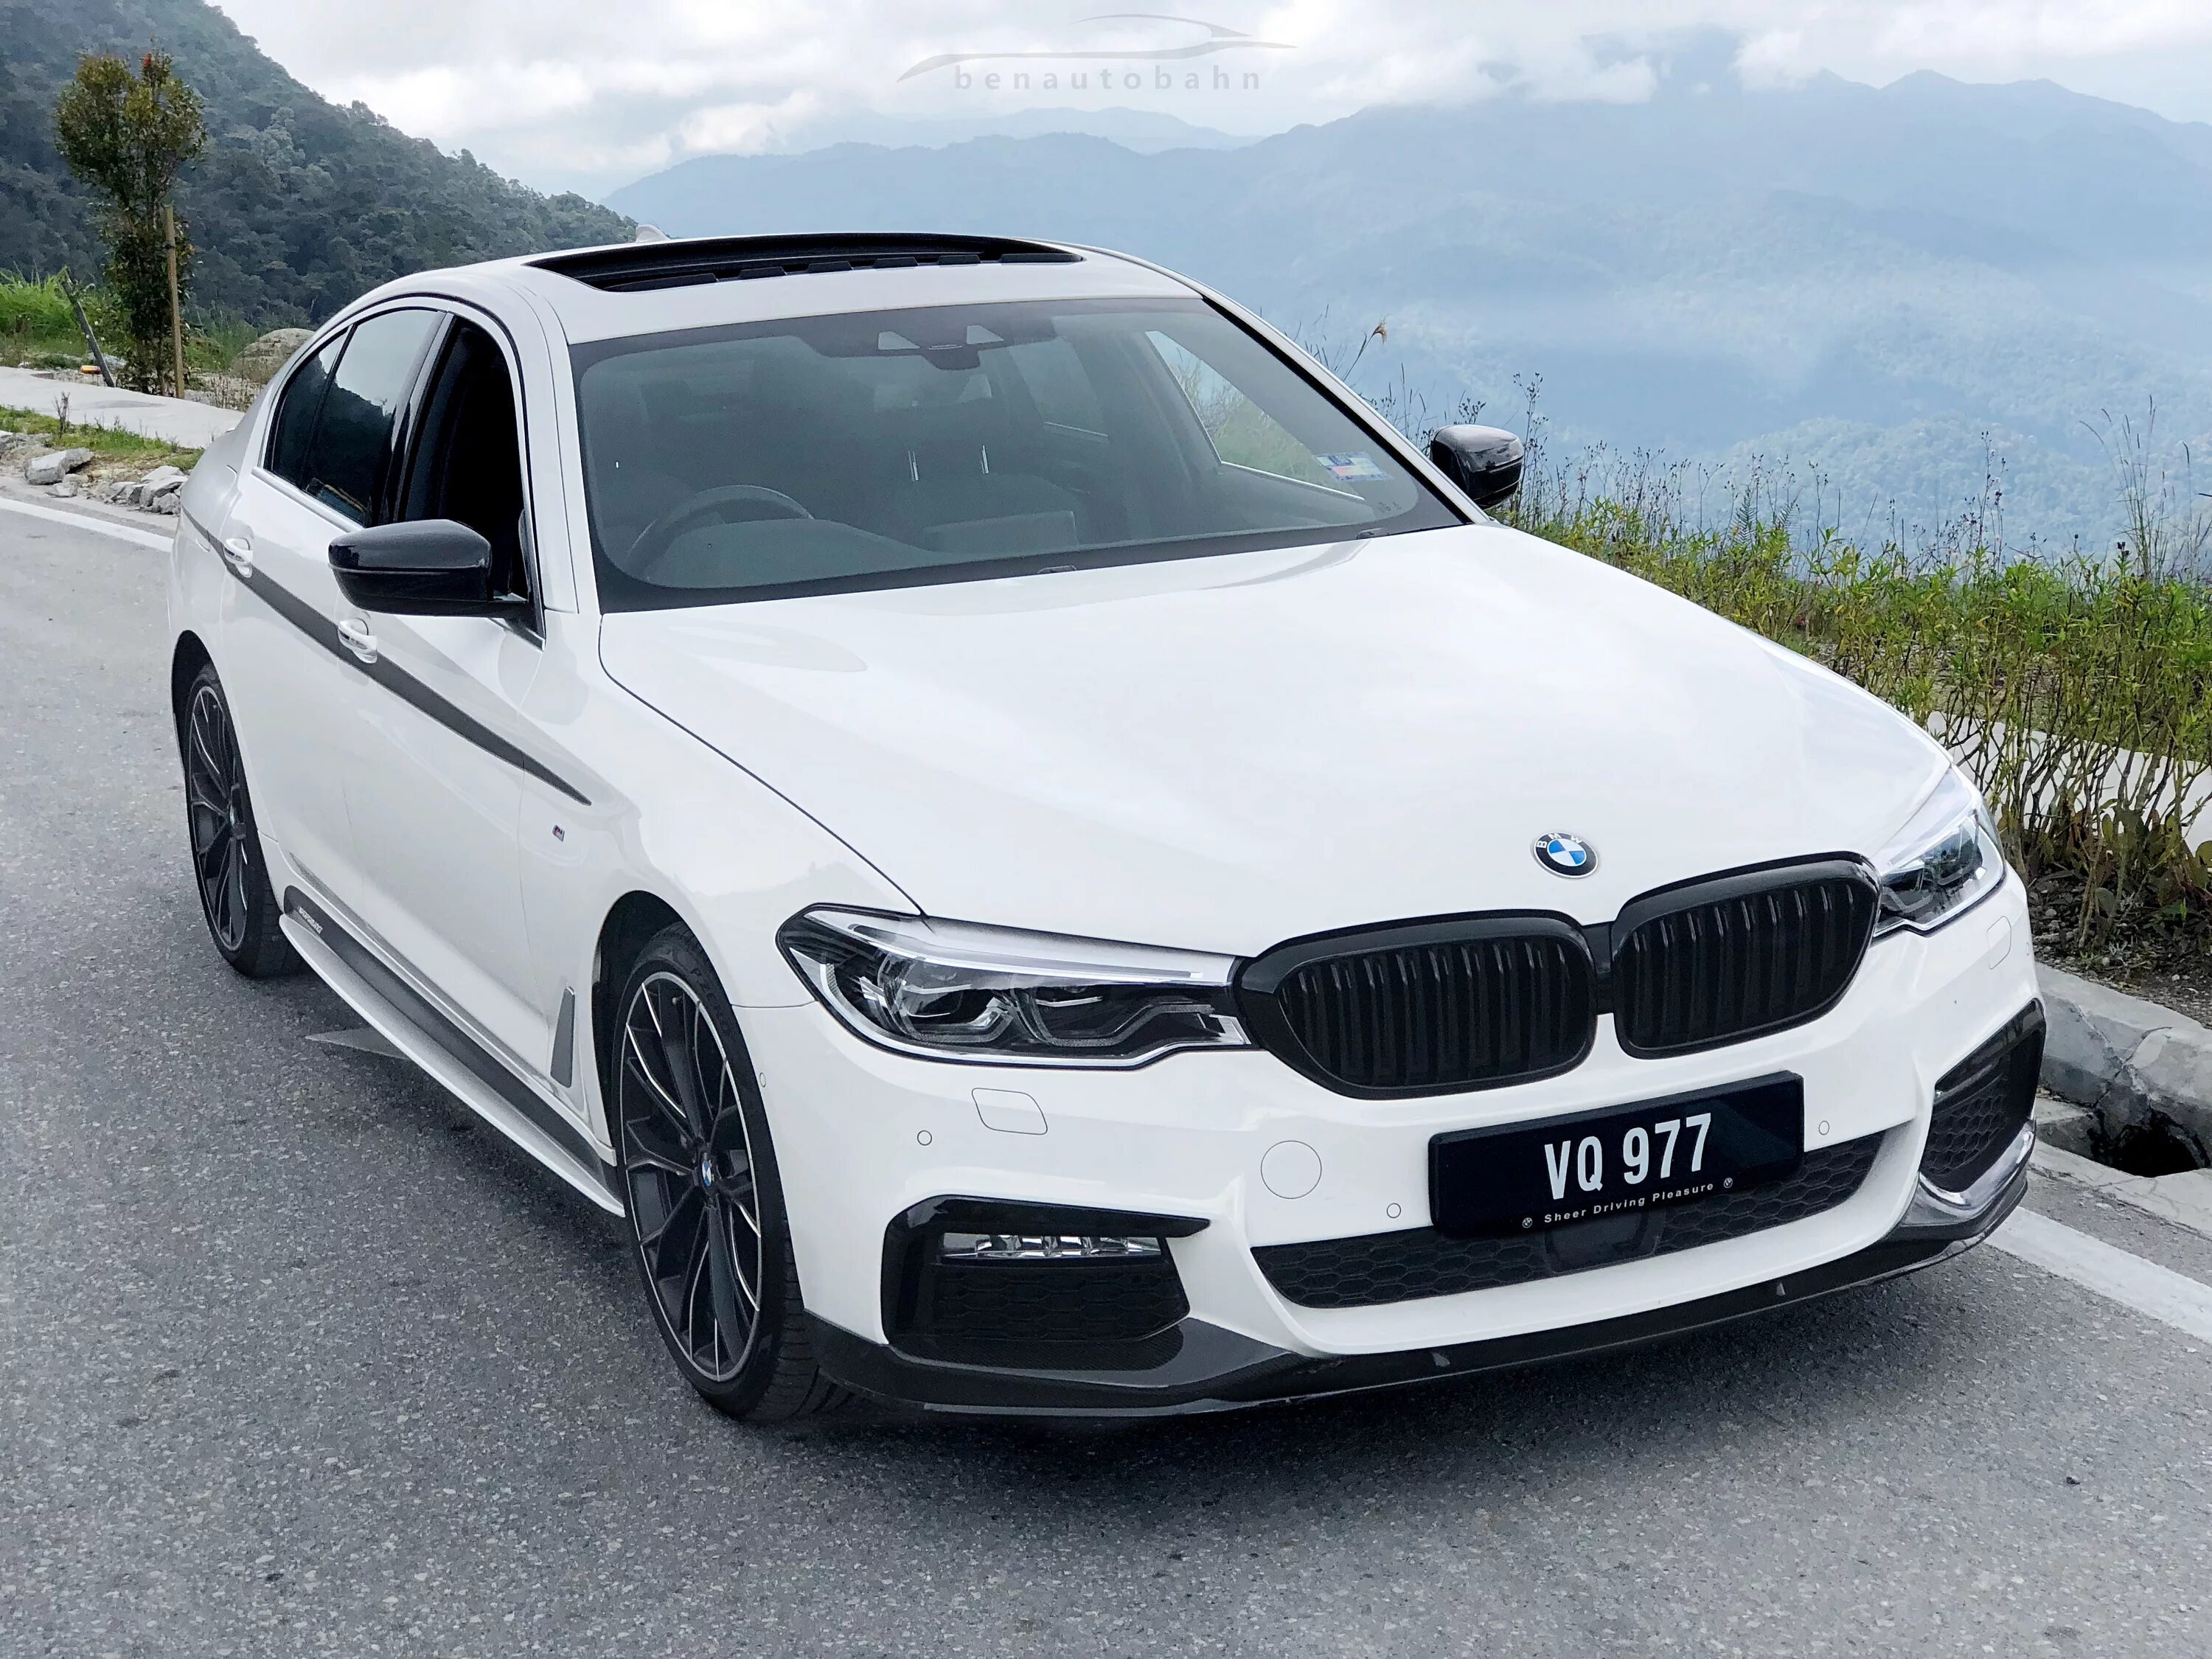 Bmw g30 m. BMW 530d g30 белая. BMW m5 g30 белая. BMW 3 g30 m Performance. BMW 530 M Performance.